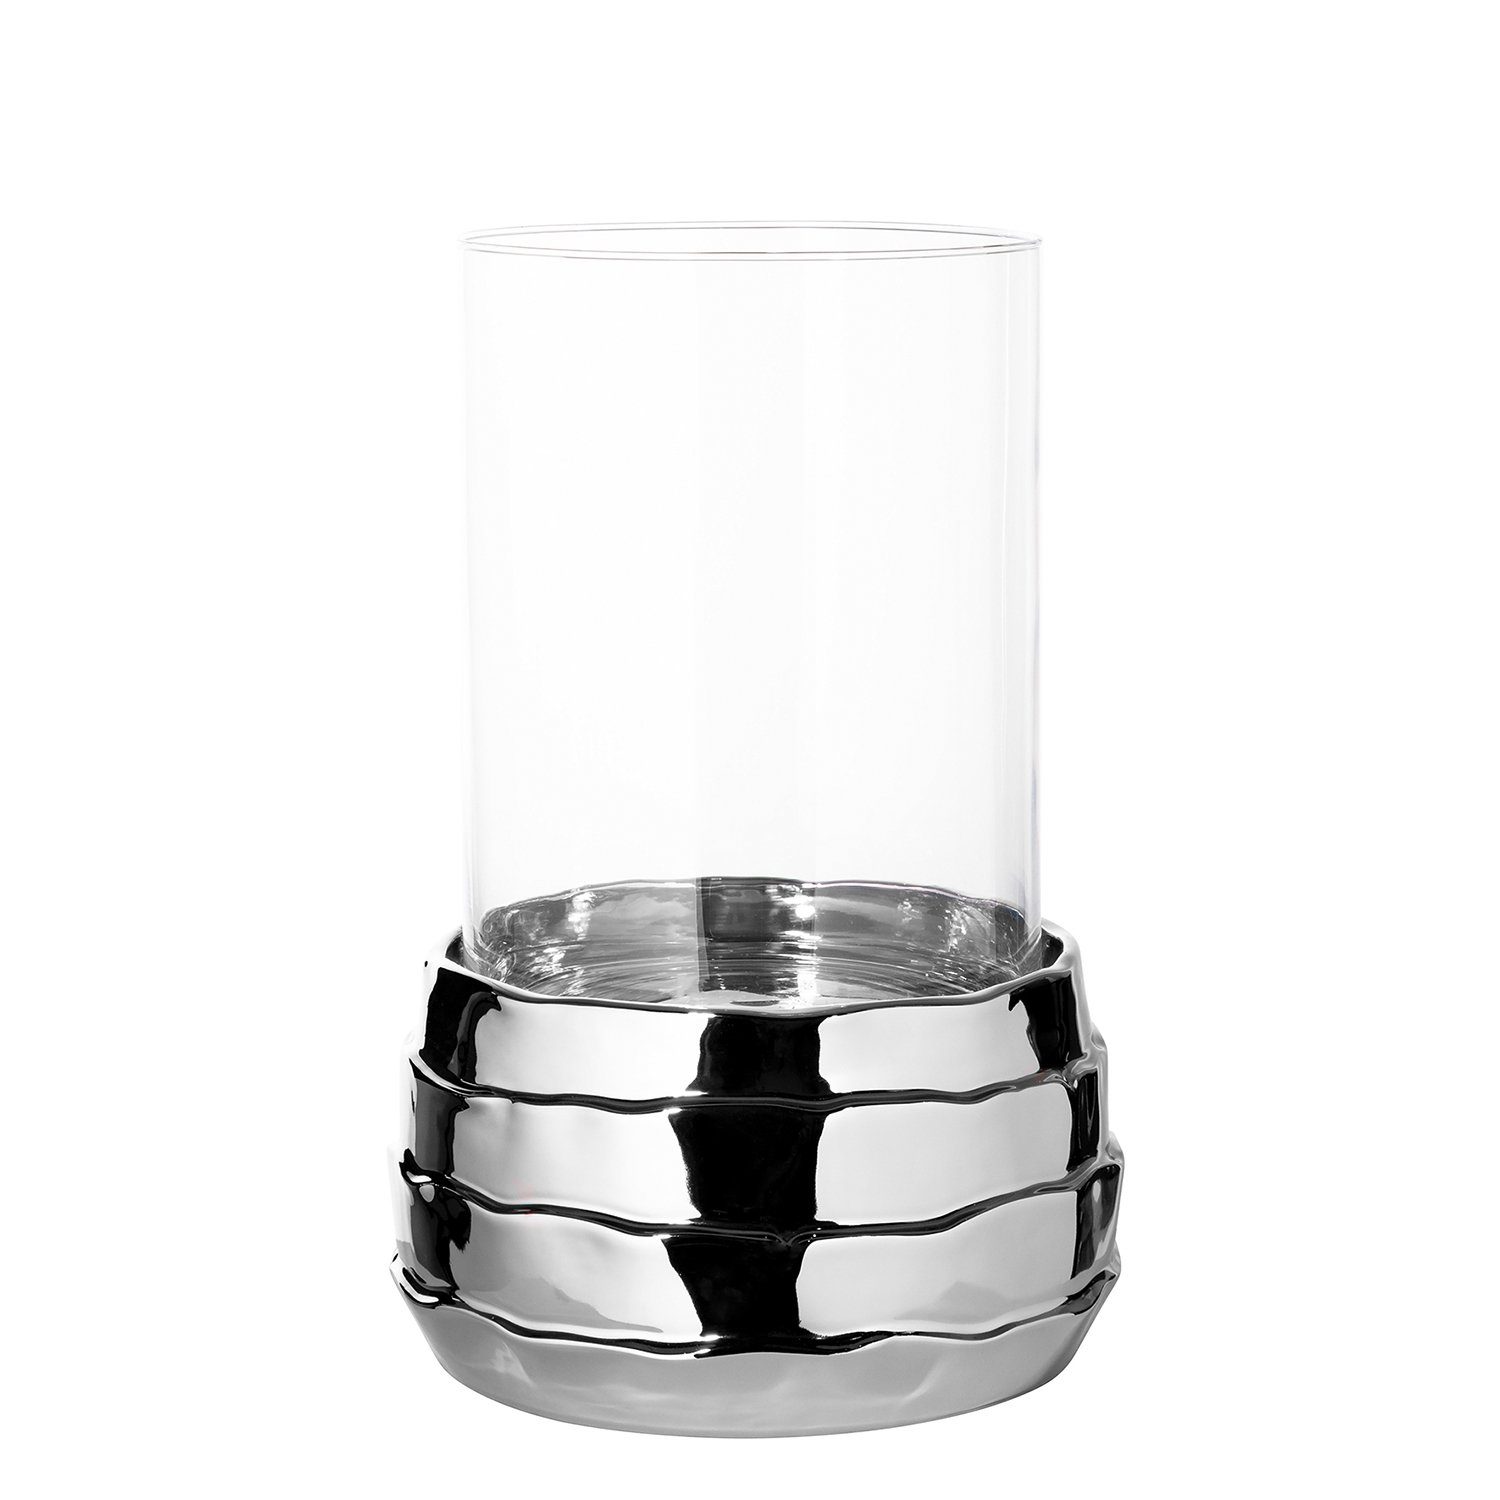 Fink Windlicht Windlicht COCON - silberfarben - Keramik - Glas - H.34cm x Ø 25cm (Keramikbasis + Glas), nicht outdoorgeeignet | Windlichter